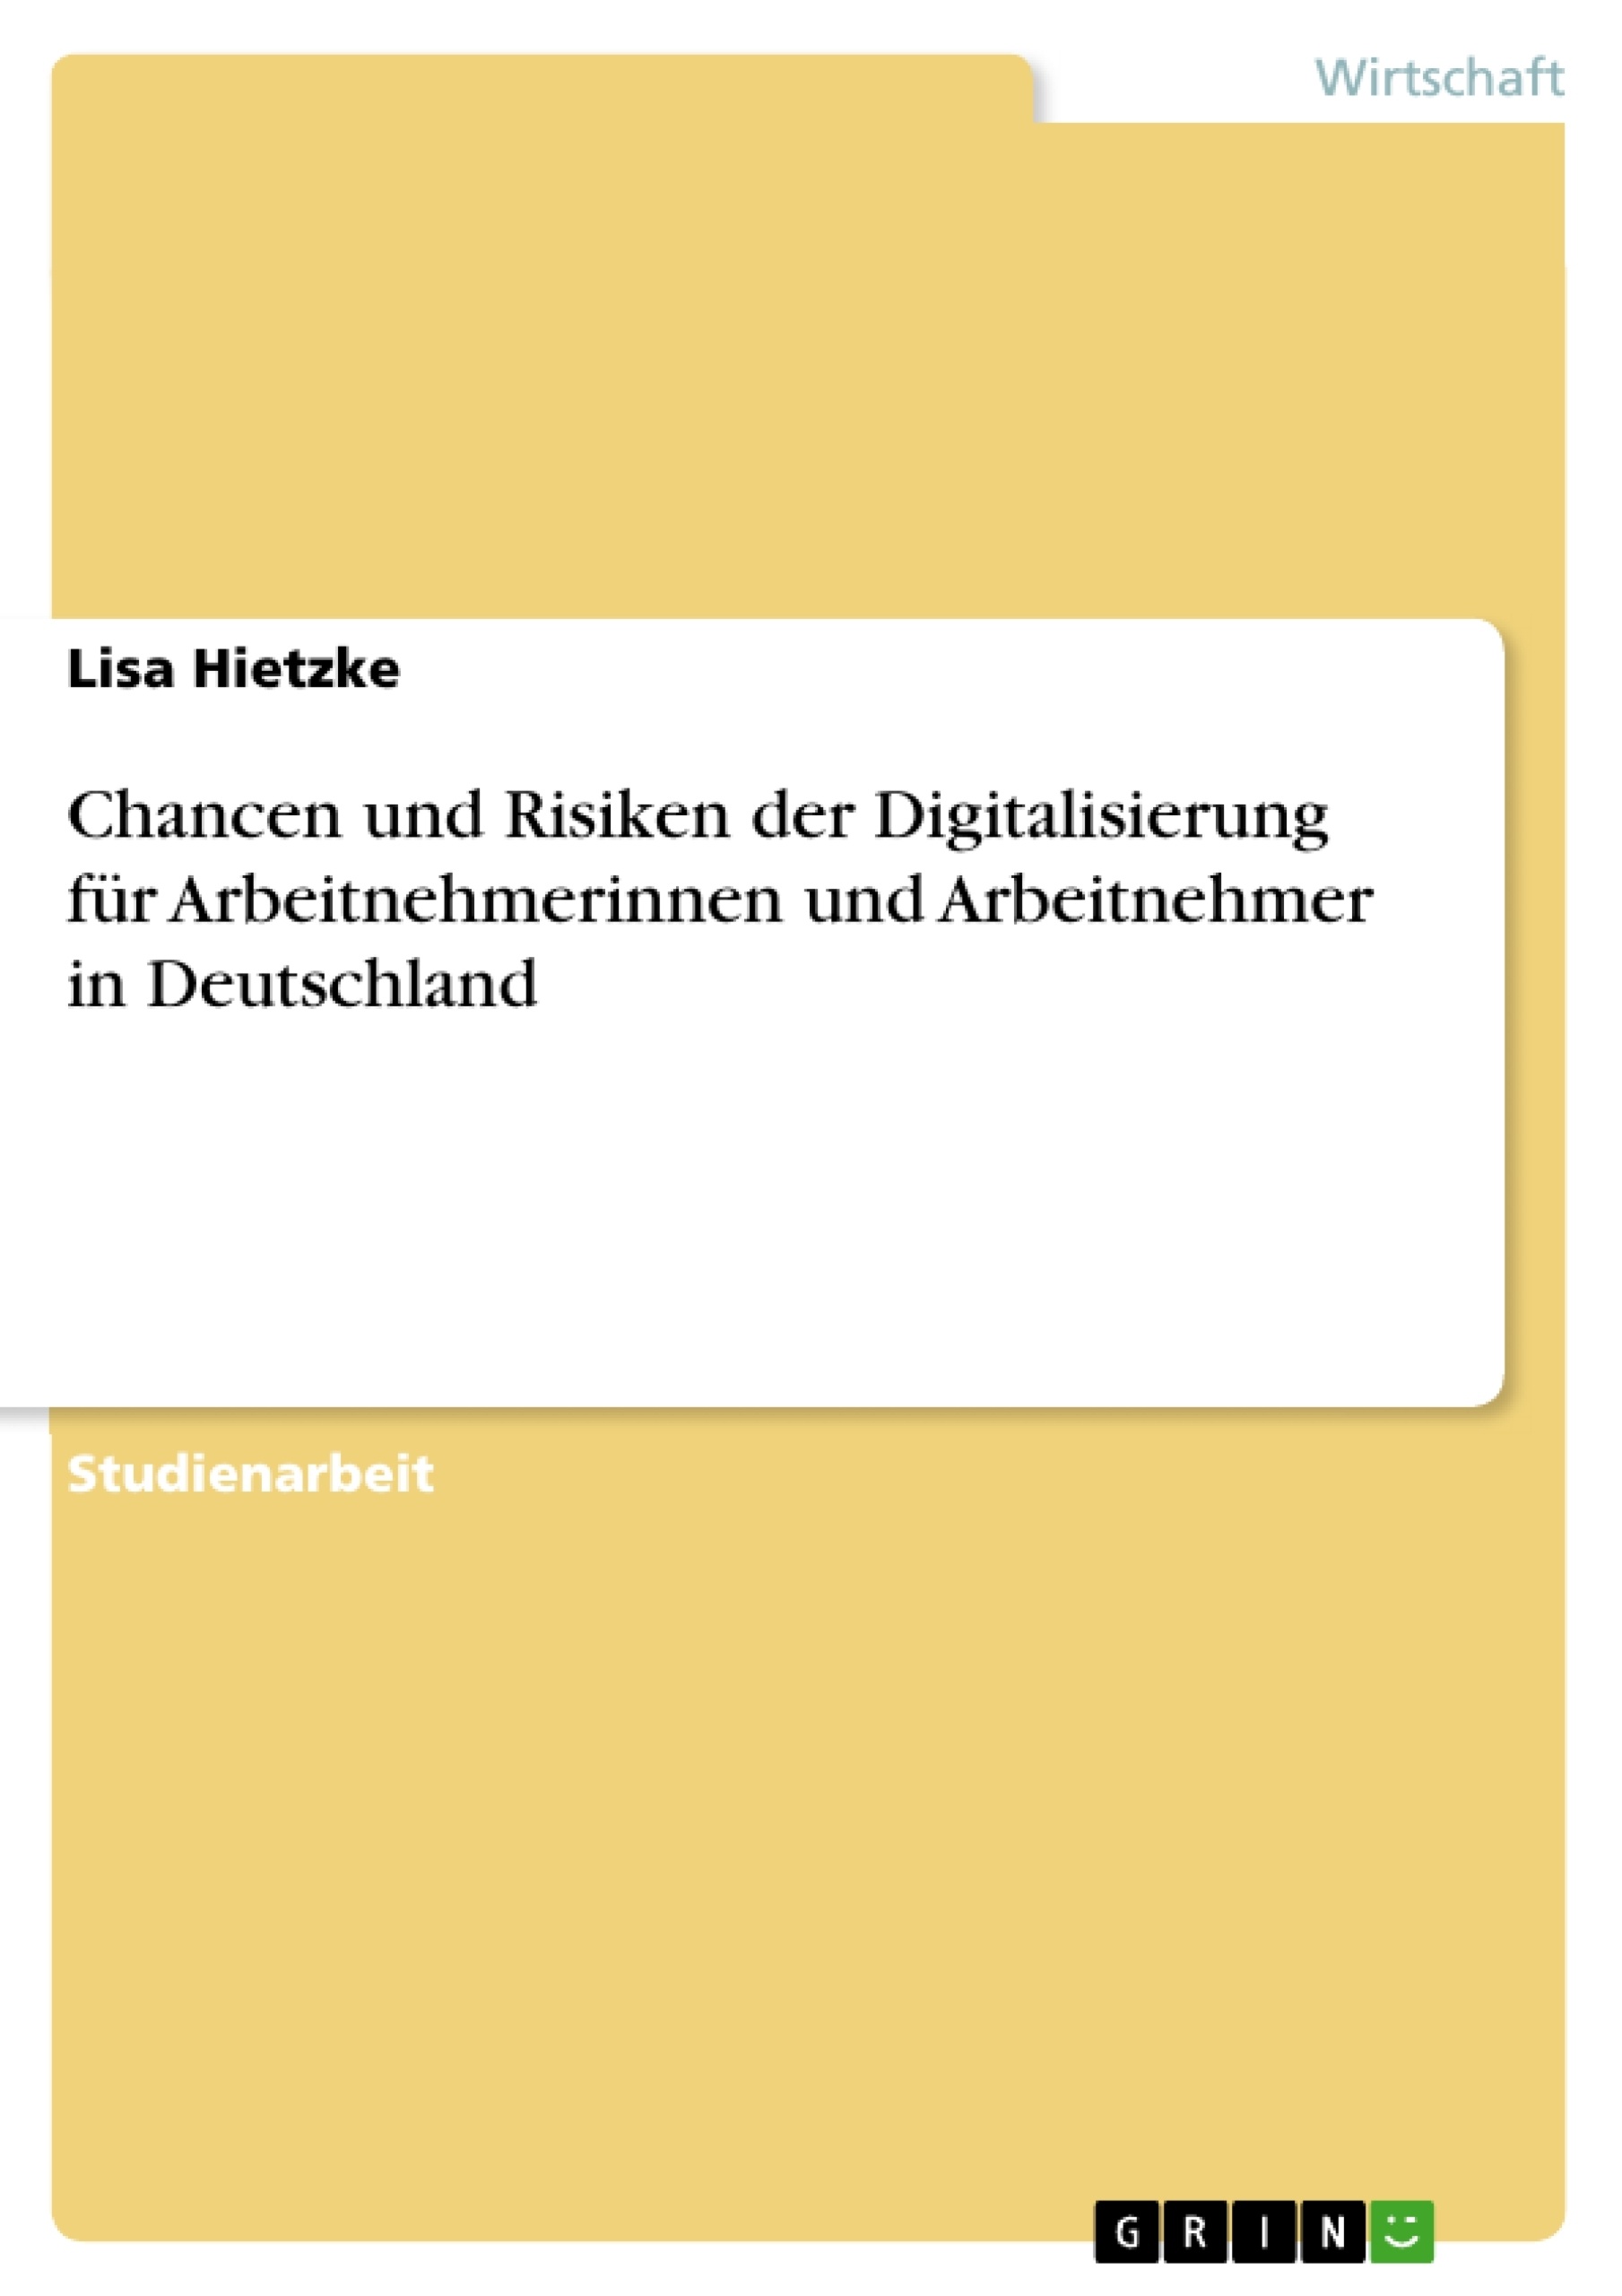 Title: Chancen und Risiken der Digitalisierung für Arbeitnehmerinnen und Arbeitnehmer in Deutschland